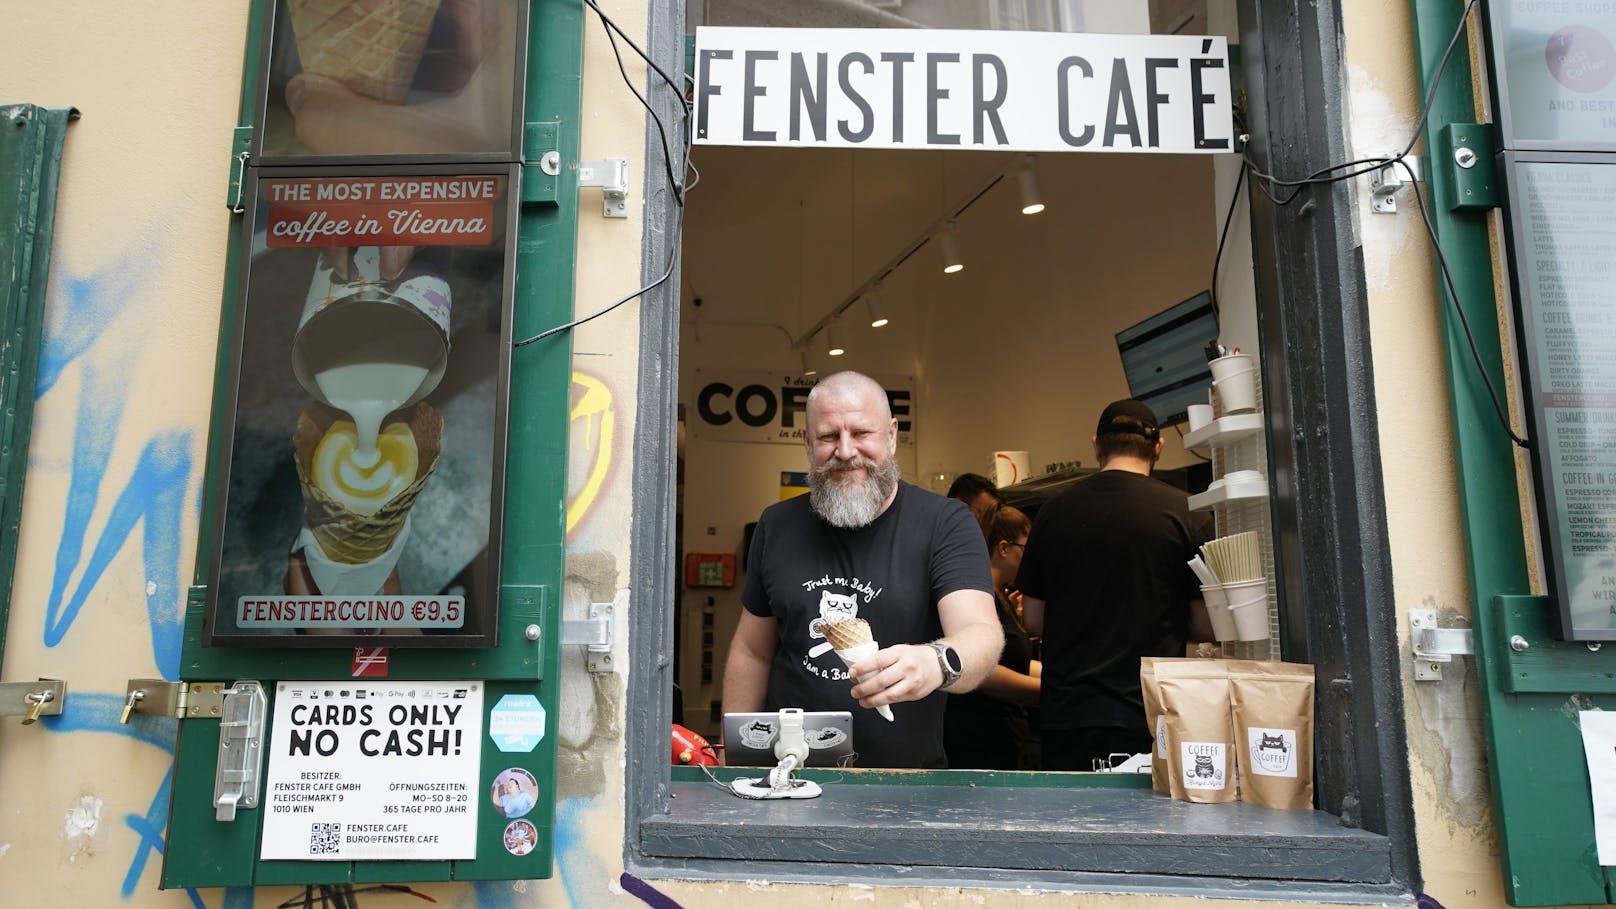 Mit 9,50 Euro verlangt Oleksandra Iamkovyi, Inhaber des Fenstercafés, einen satten Preis für einen Cappuccino im Stanitzel. Das brachte ihm nun mehr Kunden ein, die den "teuersten Kaffee Wiens" probieren wollen.